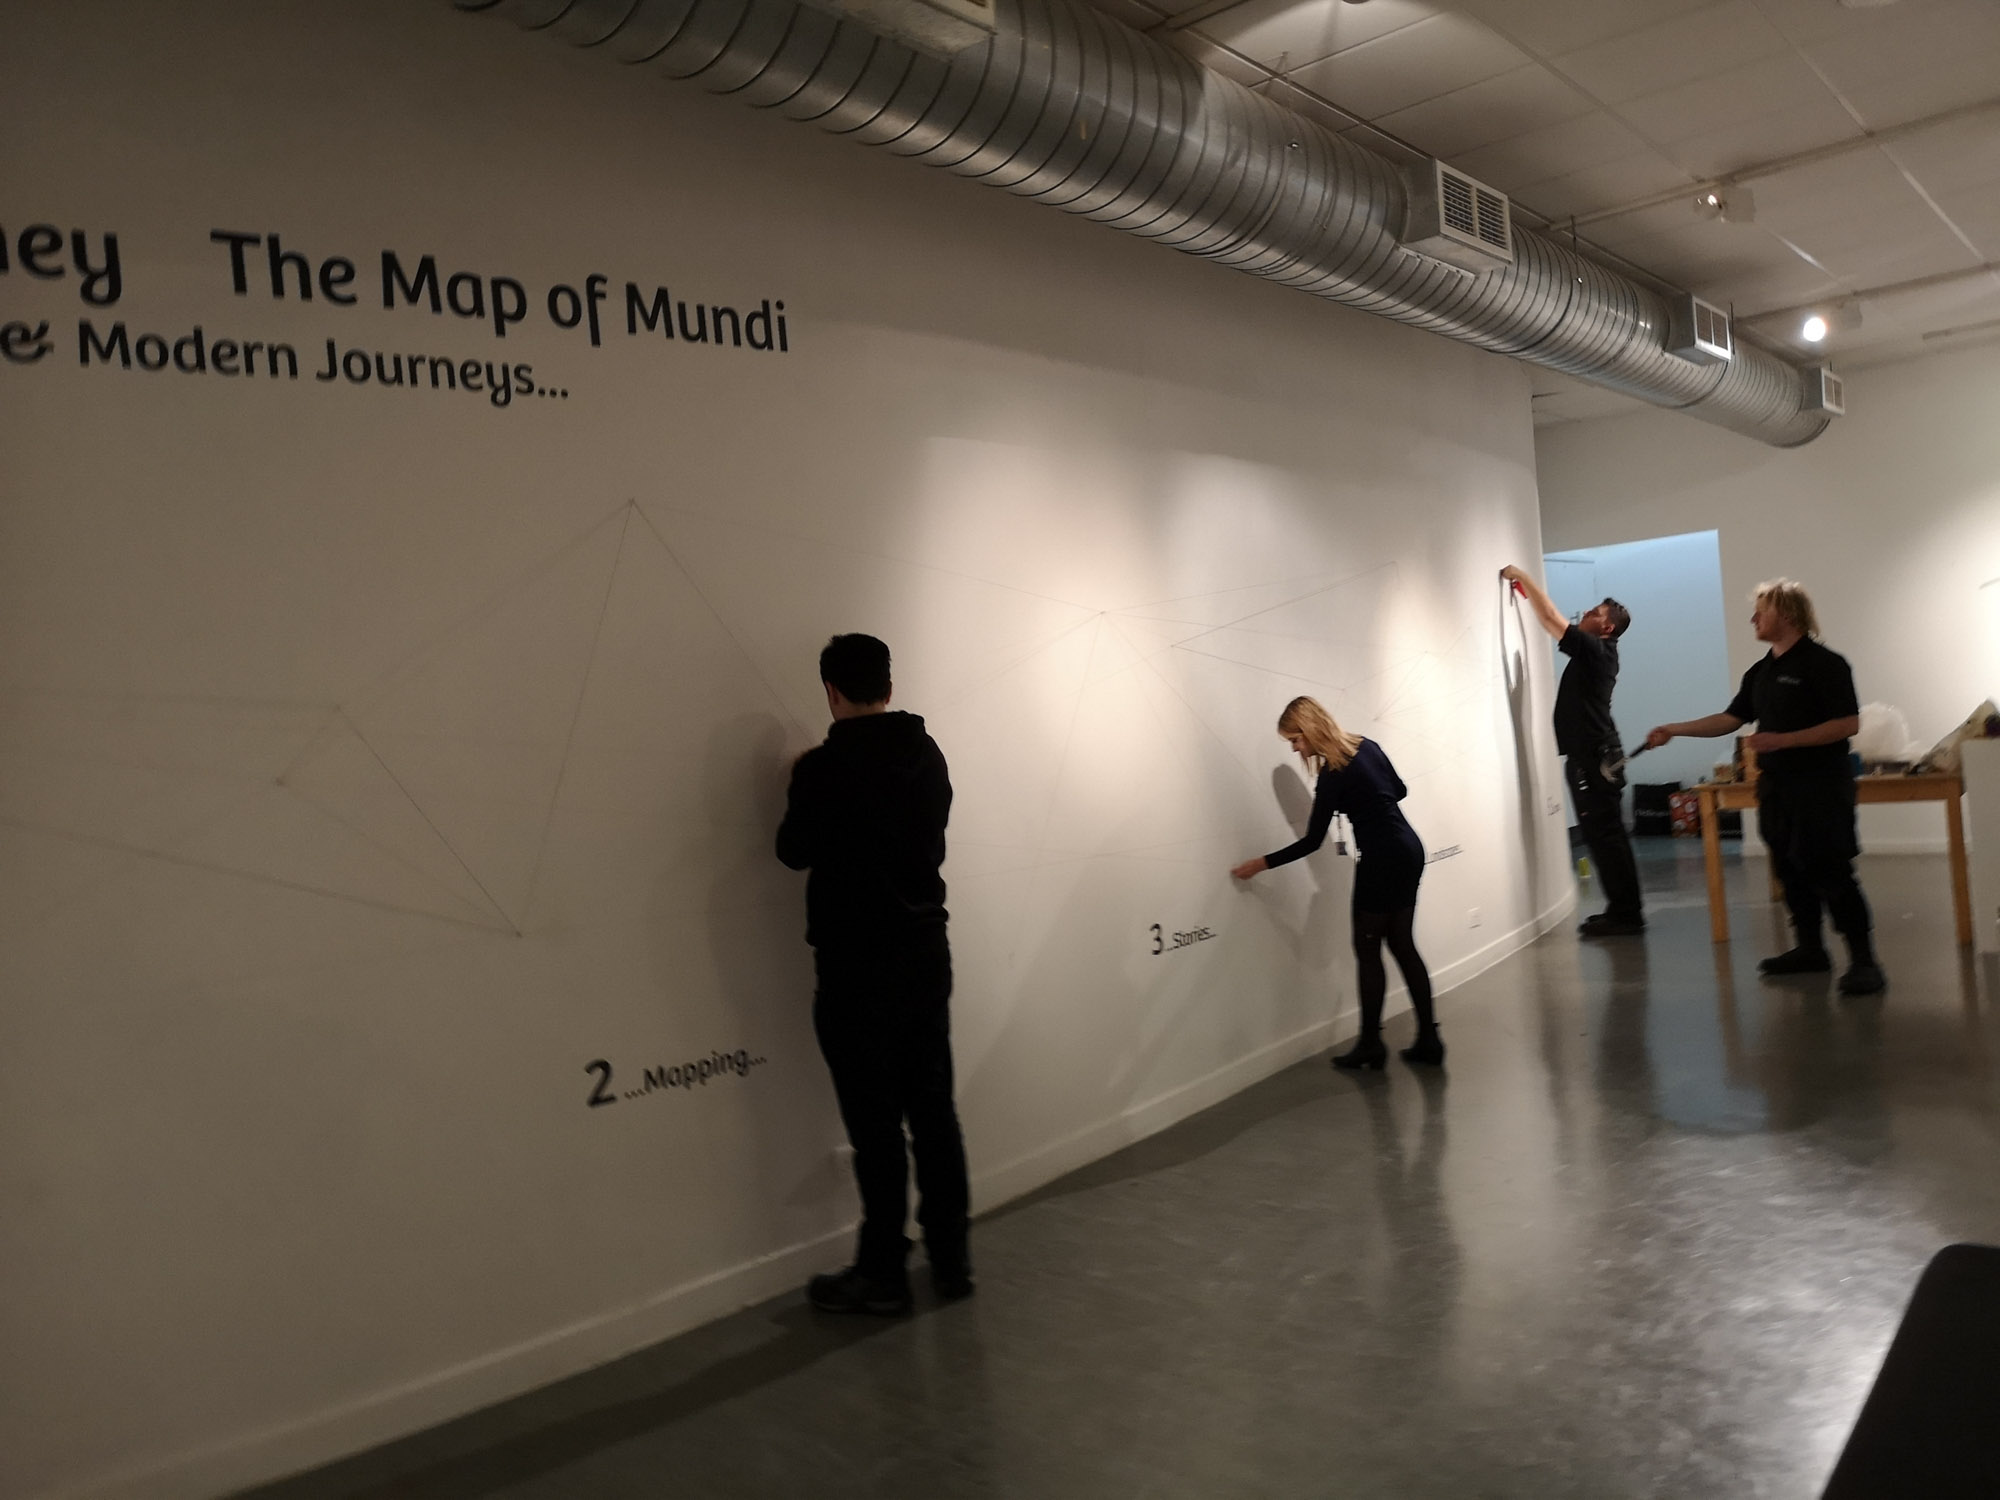 6: Mappa Mundi & The Wall of Time